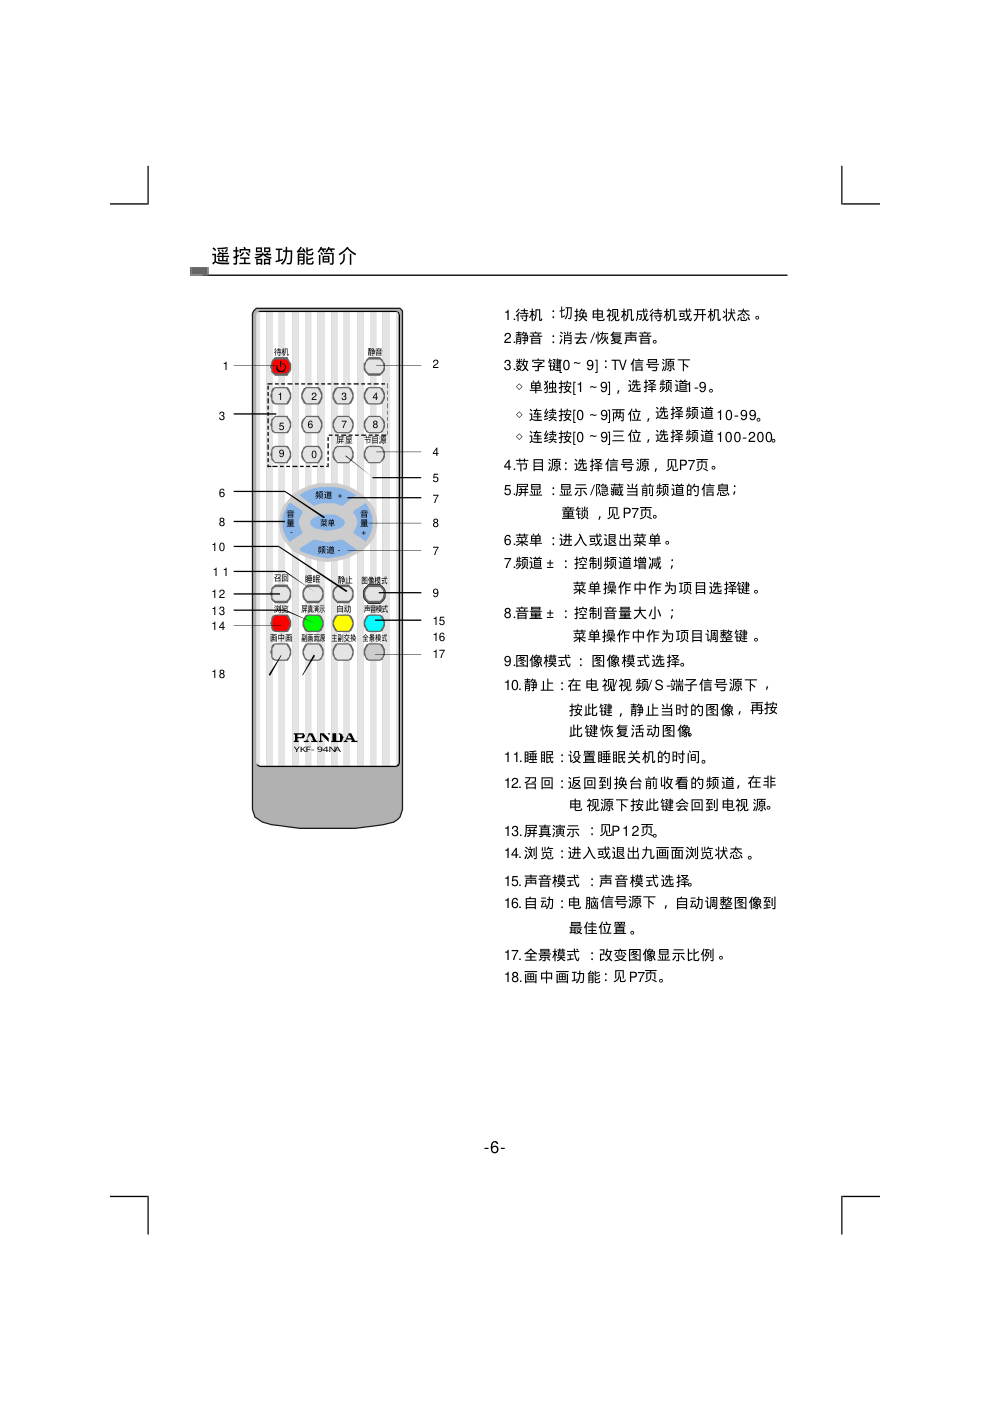 熊猫电子L42A915FI液晶彩色电视机说明书-8